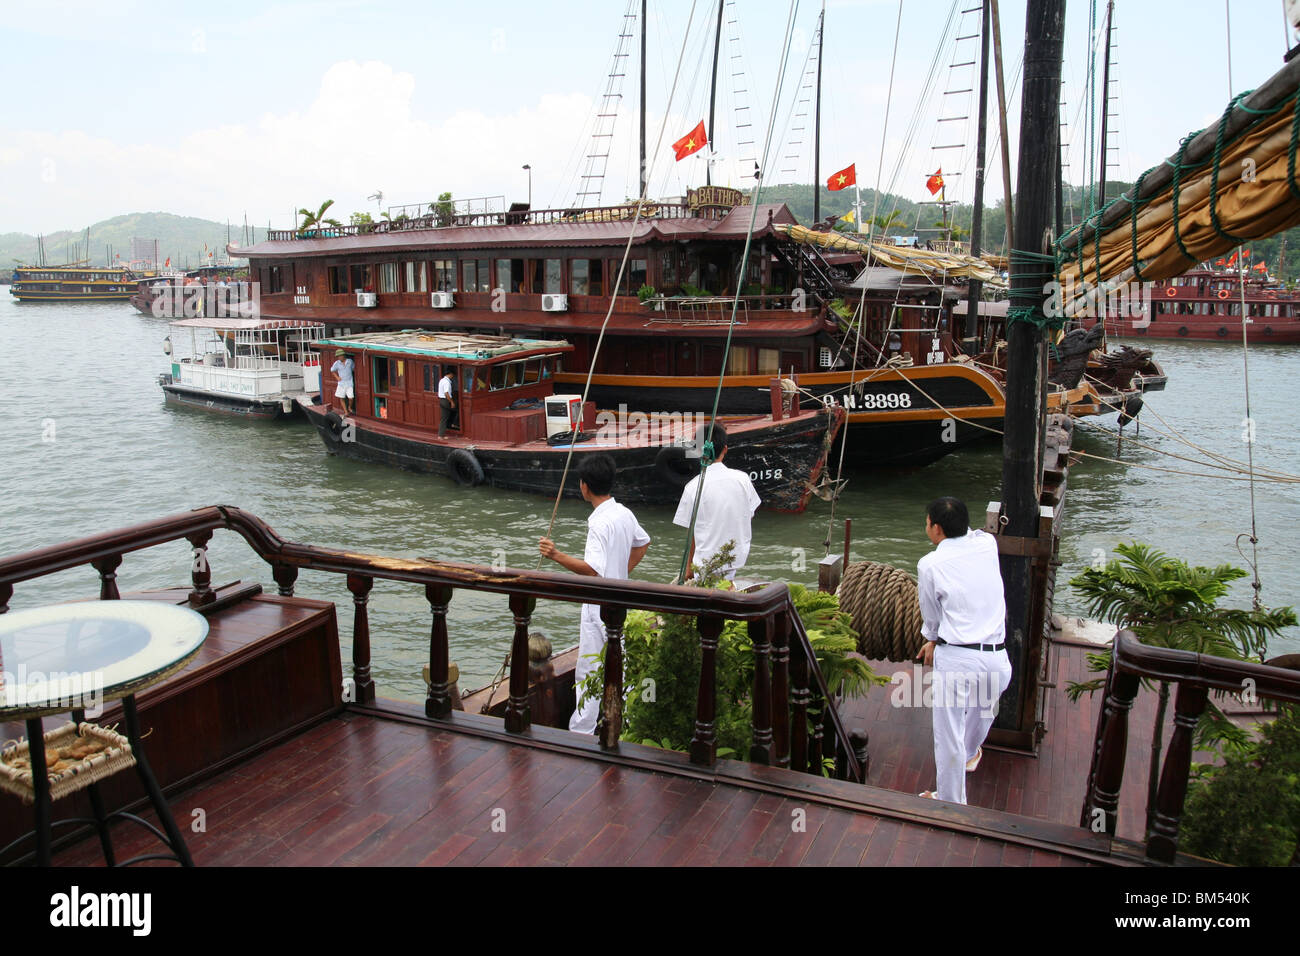 Jonque touristique traditionnel de la Baie d'Halong Vietnam Banque D'Images